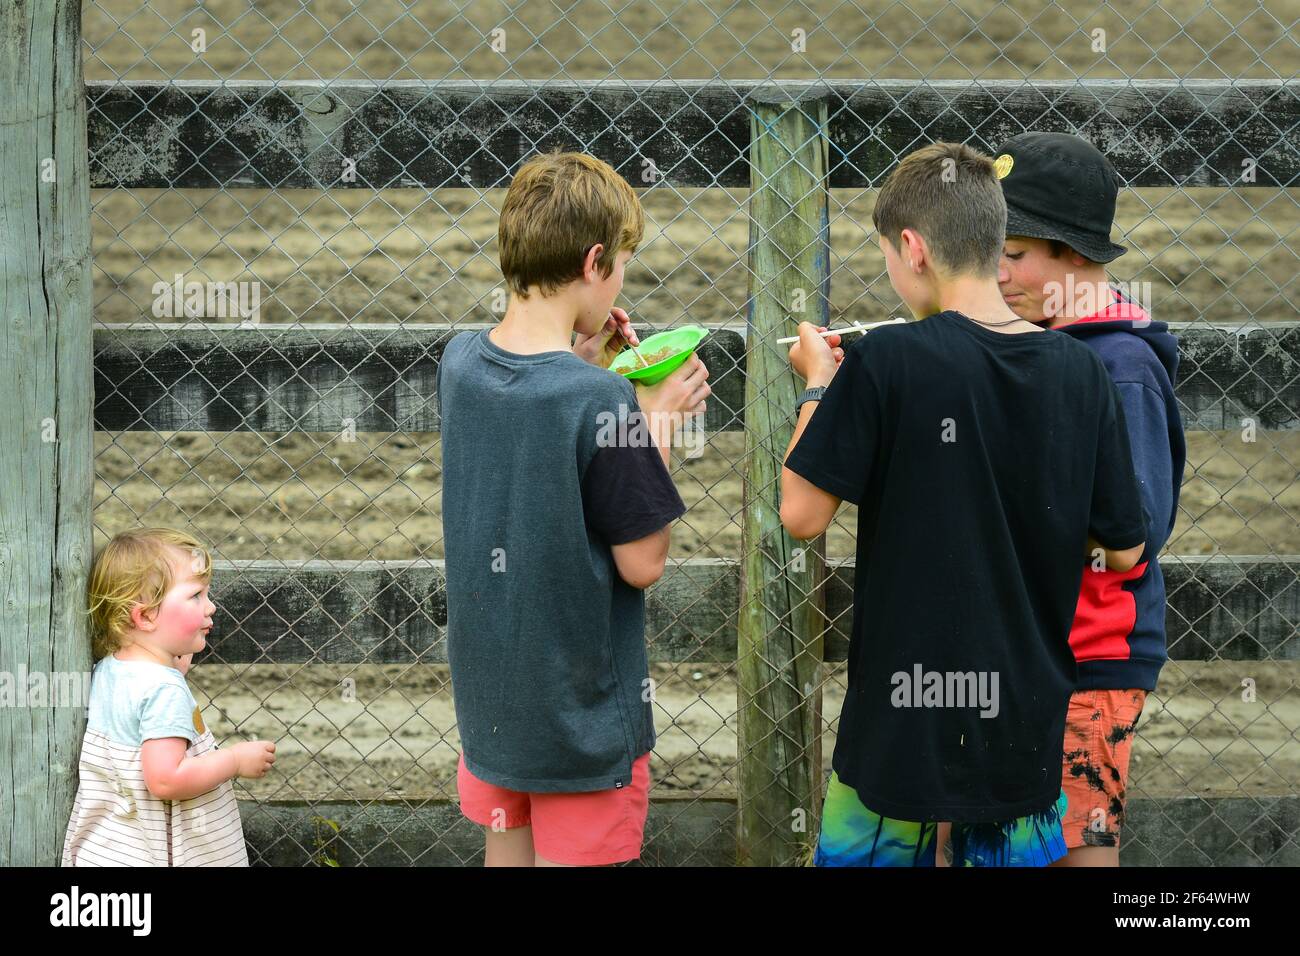 Photo de rue: Trois garçons appréciant la glace de l'eau un jour chaud d'été, et une petite fille les regardant sérieusement et probablement avec envie Banque D'Images